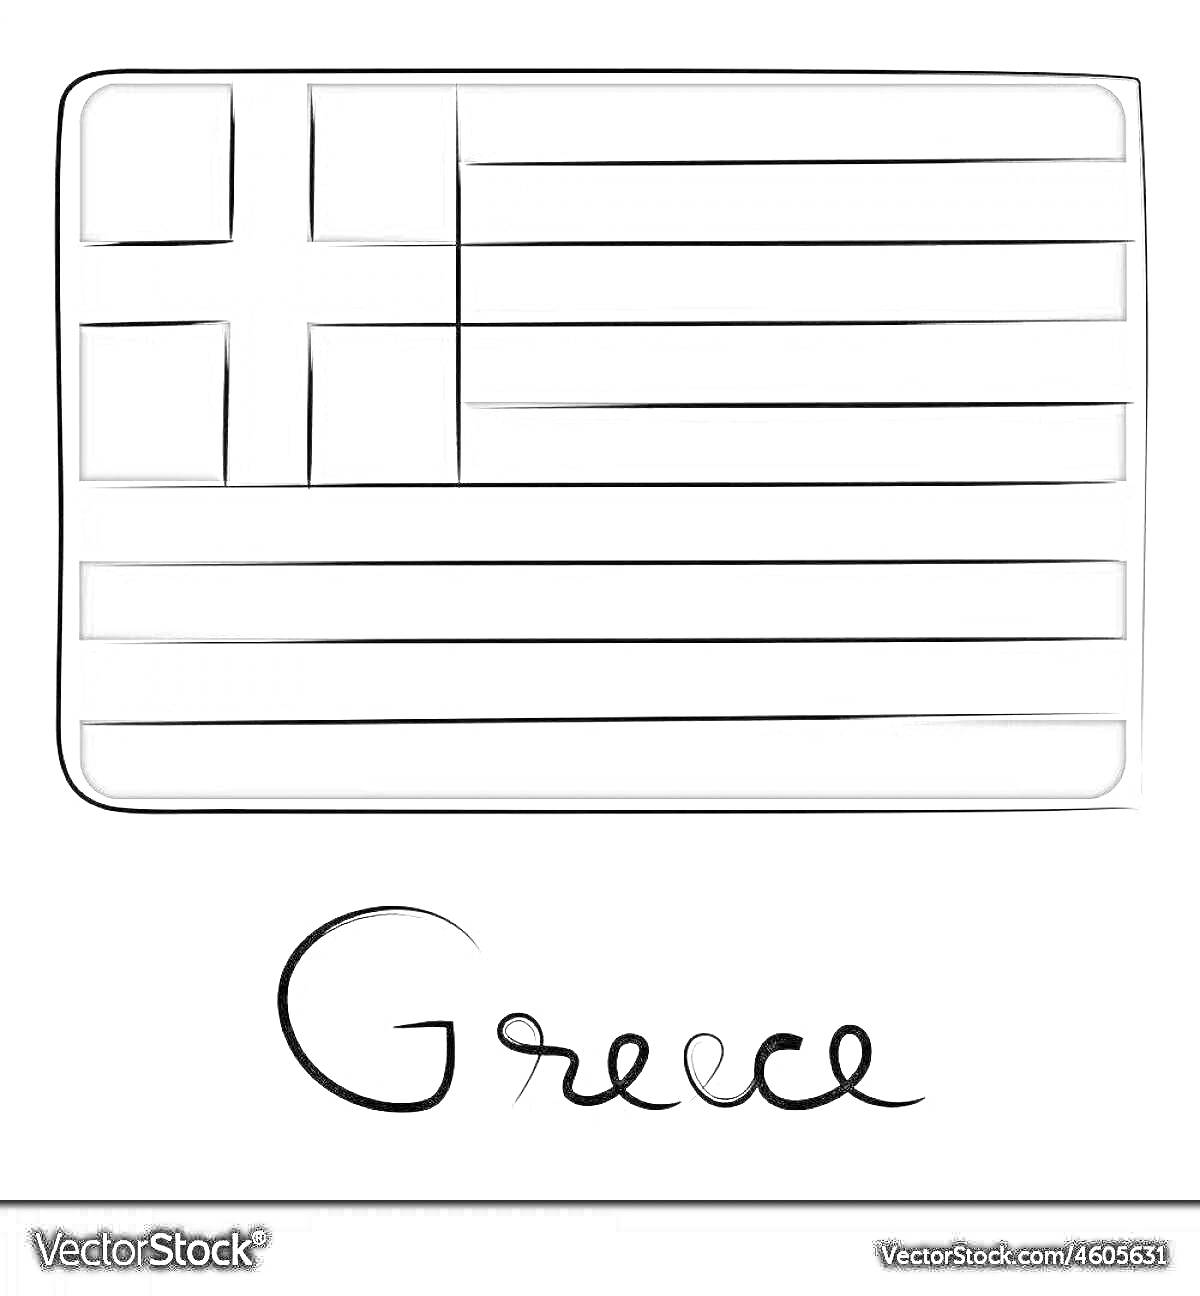 Раскраска Раскраска с флагом Греции и надписью 